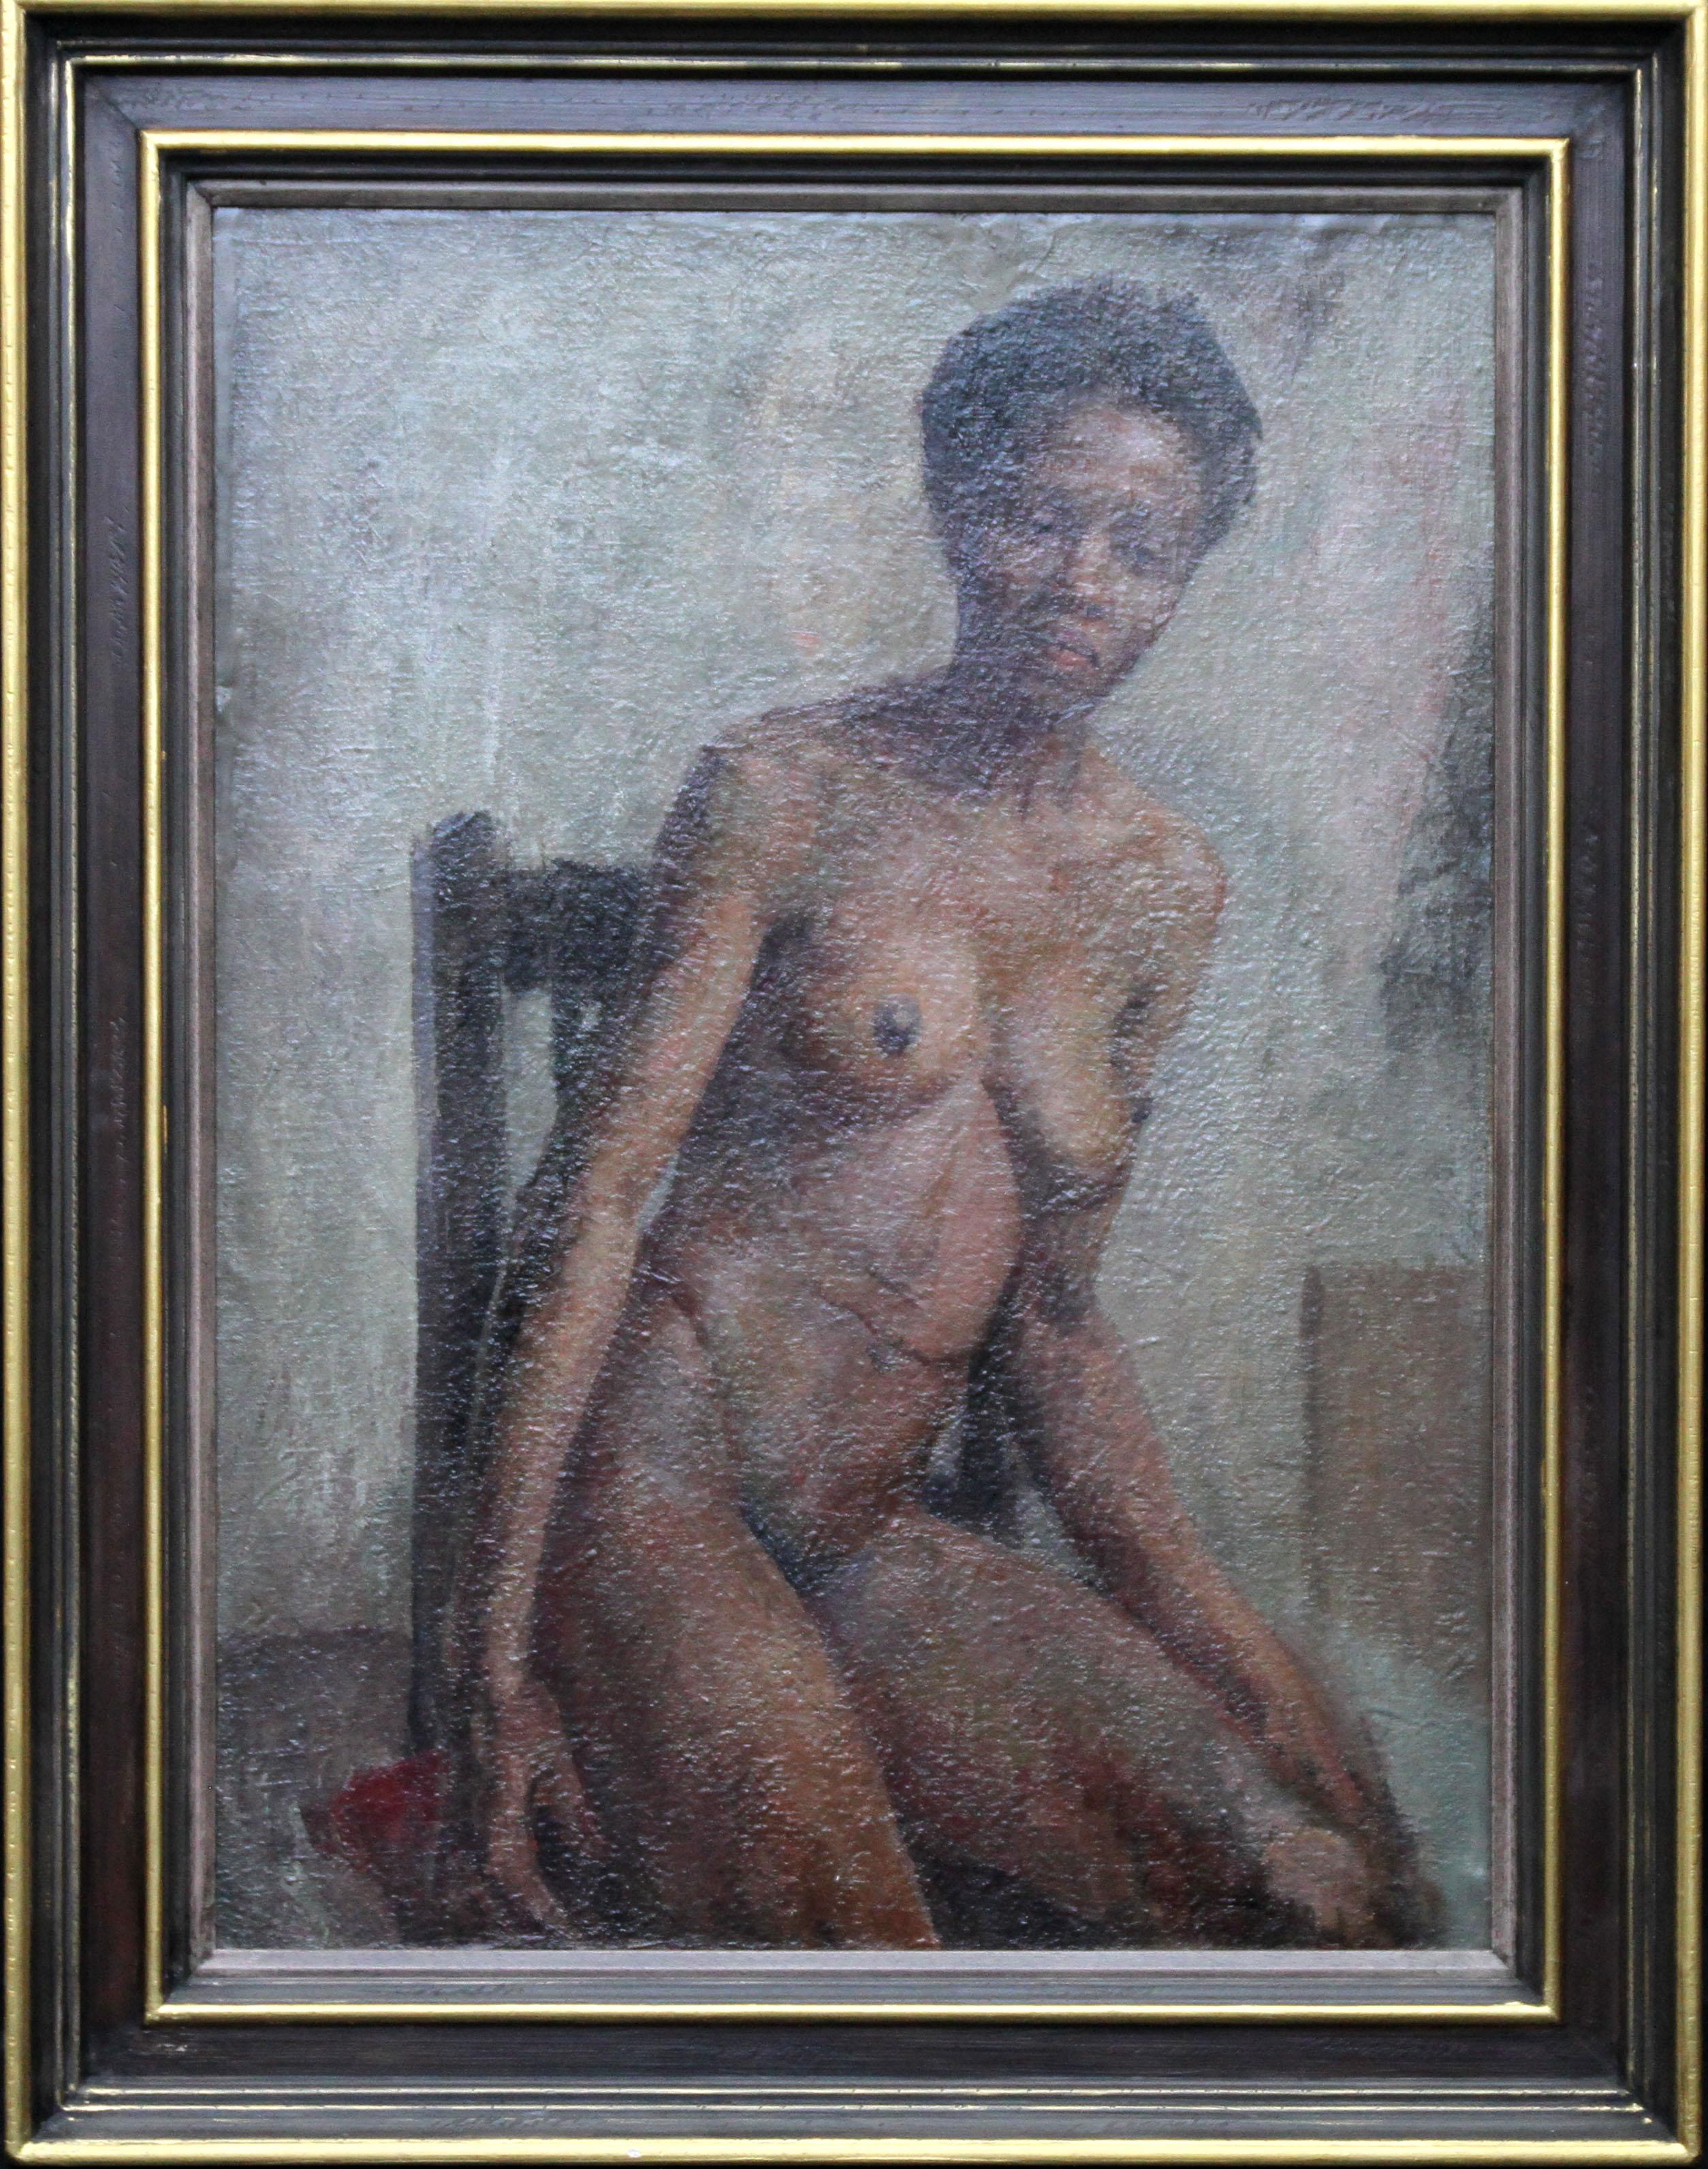 Nude - British Impressionist art 50s oil painting black nude woman female artist